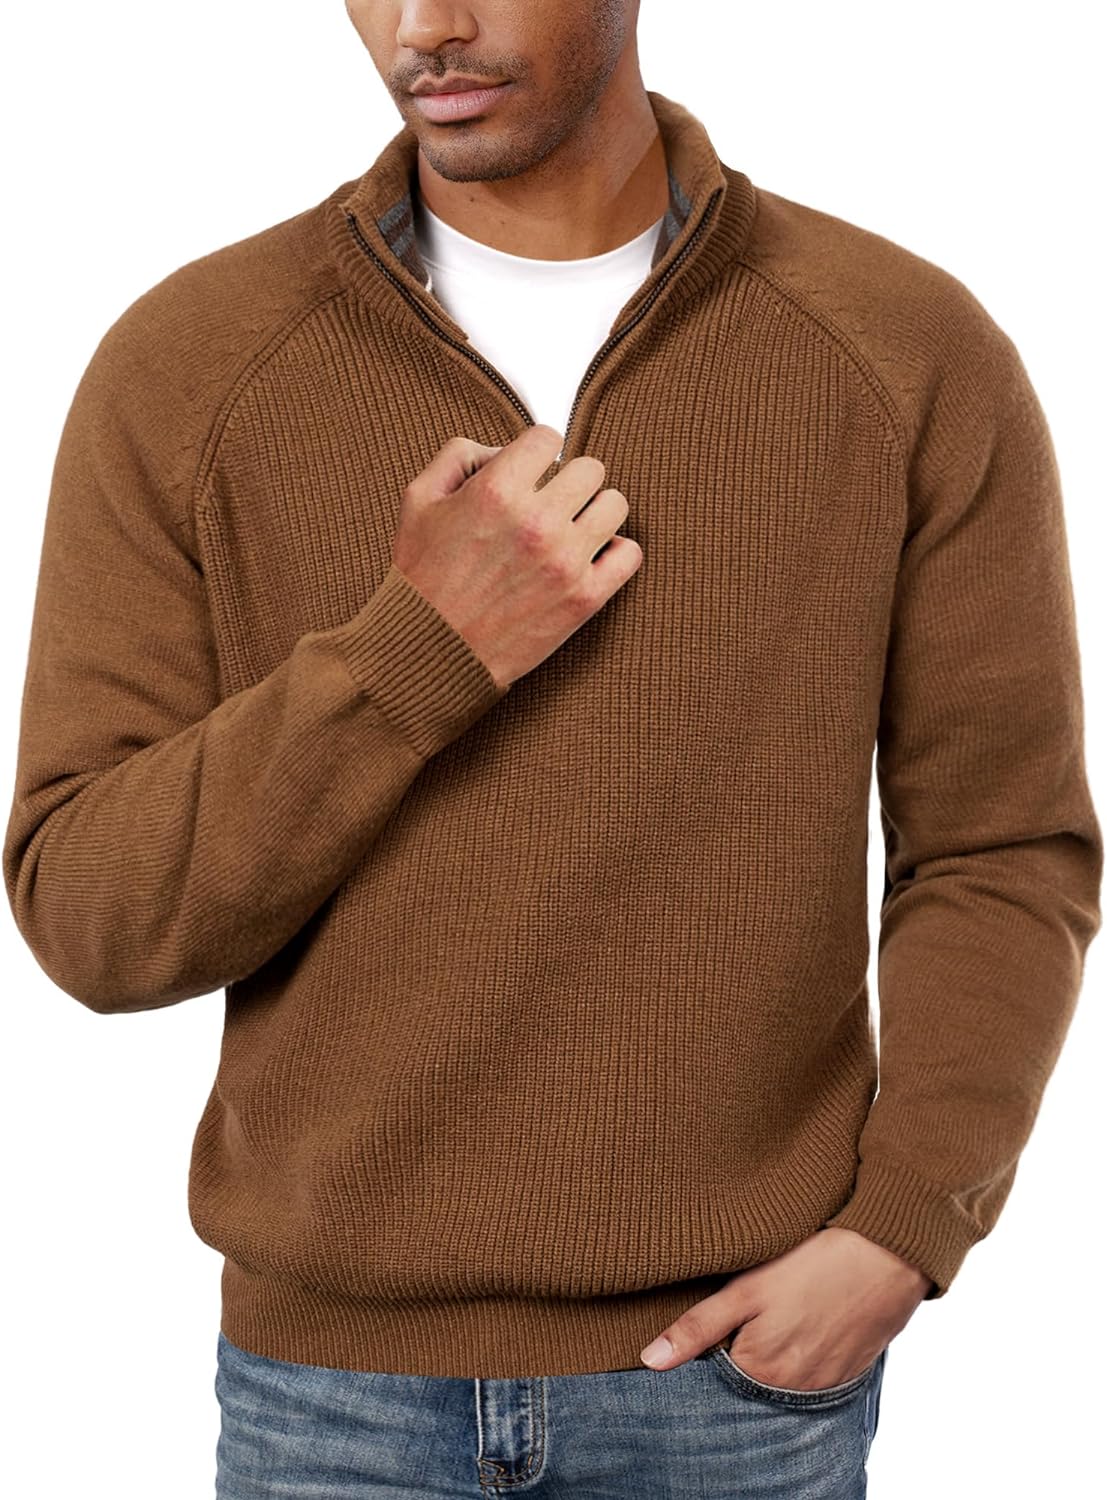 PJ PAUL JONES Men's Quarter Zip Sweater Casual Mock Neck